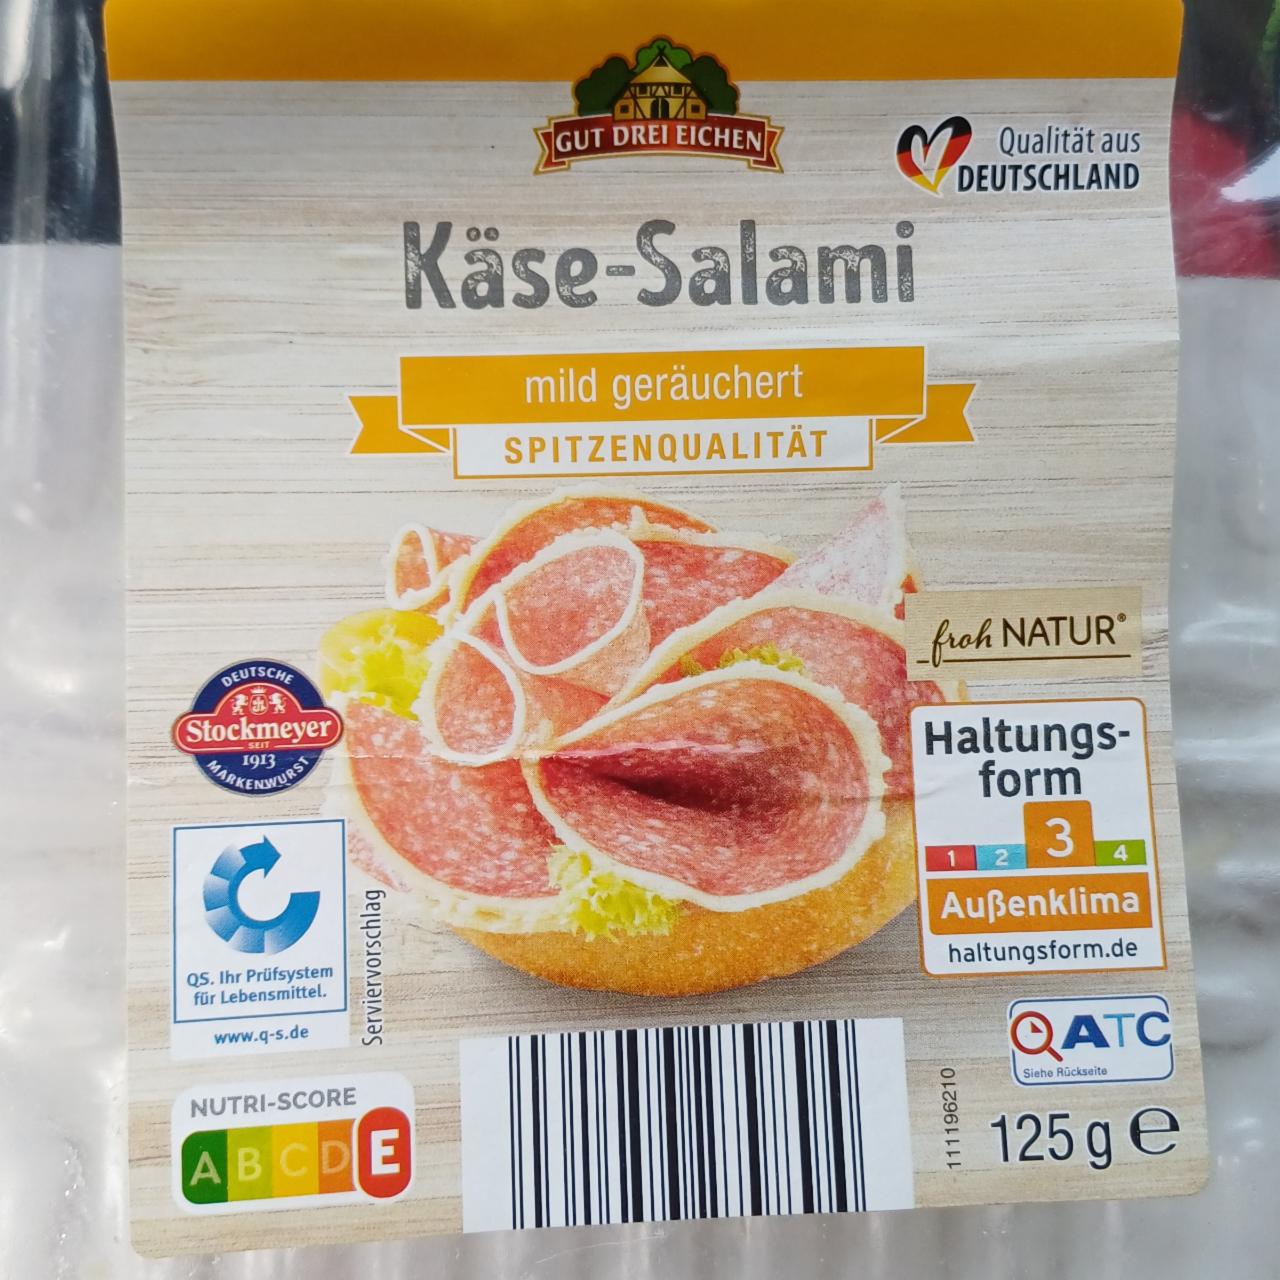 Fotografie - Käse-Salami Mild geräuchert Gut drei Eichen